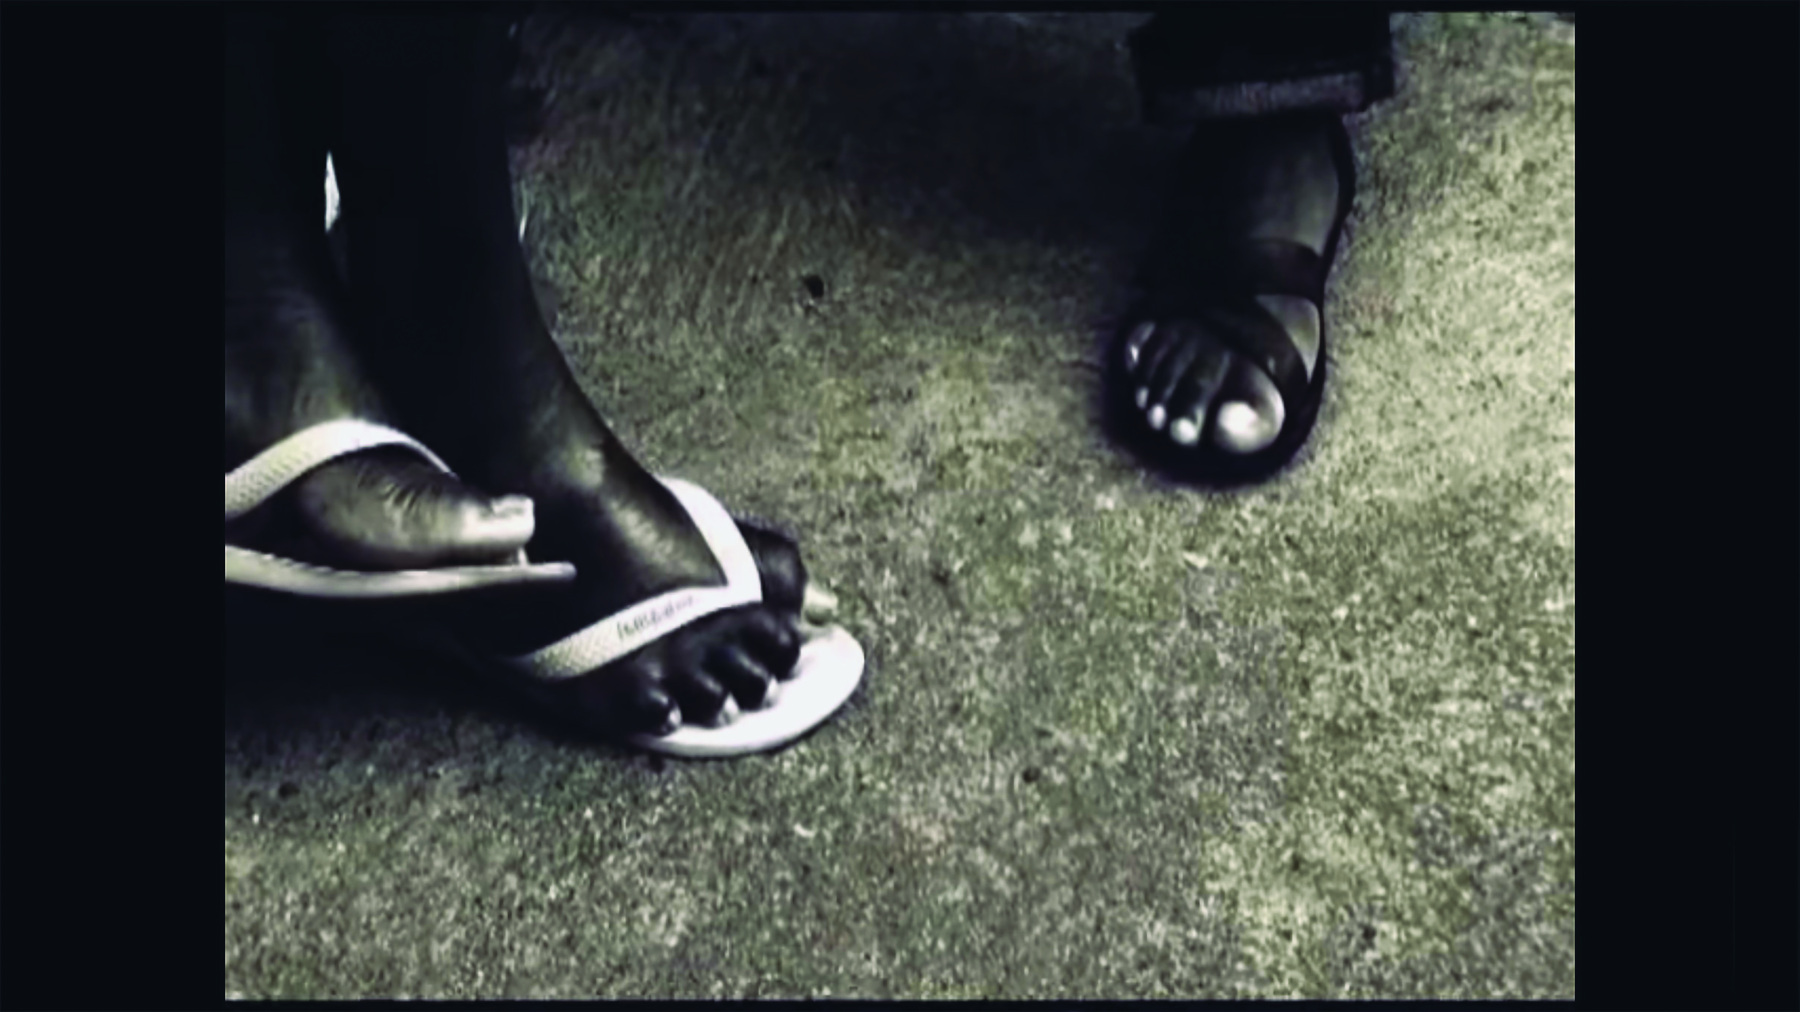 Cena de filme. Cena em preto e branco. Vista do alto de pés de duas pessoas pisando em um chão de concreto cinza. À esquerda, dois pés cruzados, usando chinelos claros e, à direita, um pé usando sandália escura.